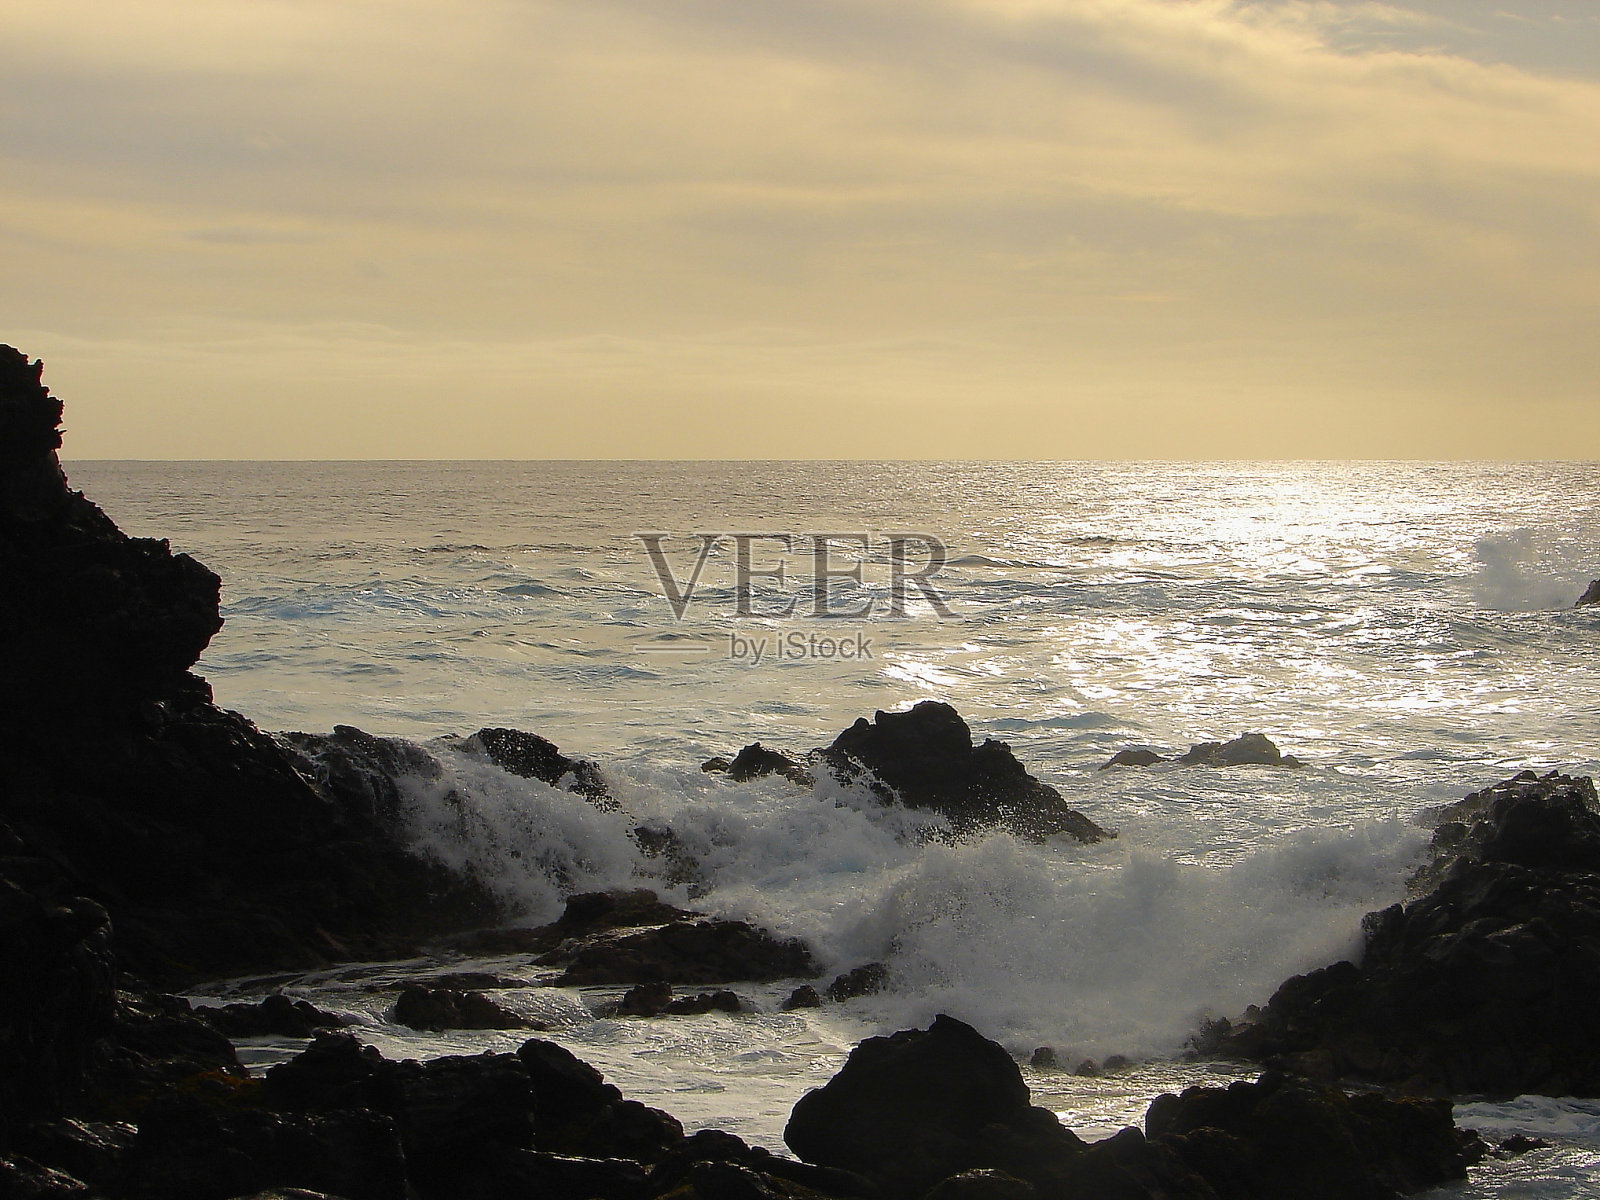 令人印象深刻的复活节岛和戏剧性的海岸线:蓝色的海浪拍打岩石形成的悬崖-拉帕努伊古老文明-田诗般的太平洋在戏剧性的日落，戏剧性的风景全景-智利照片摄影图片